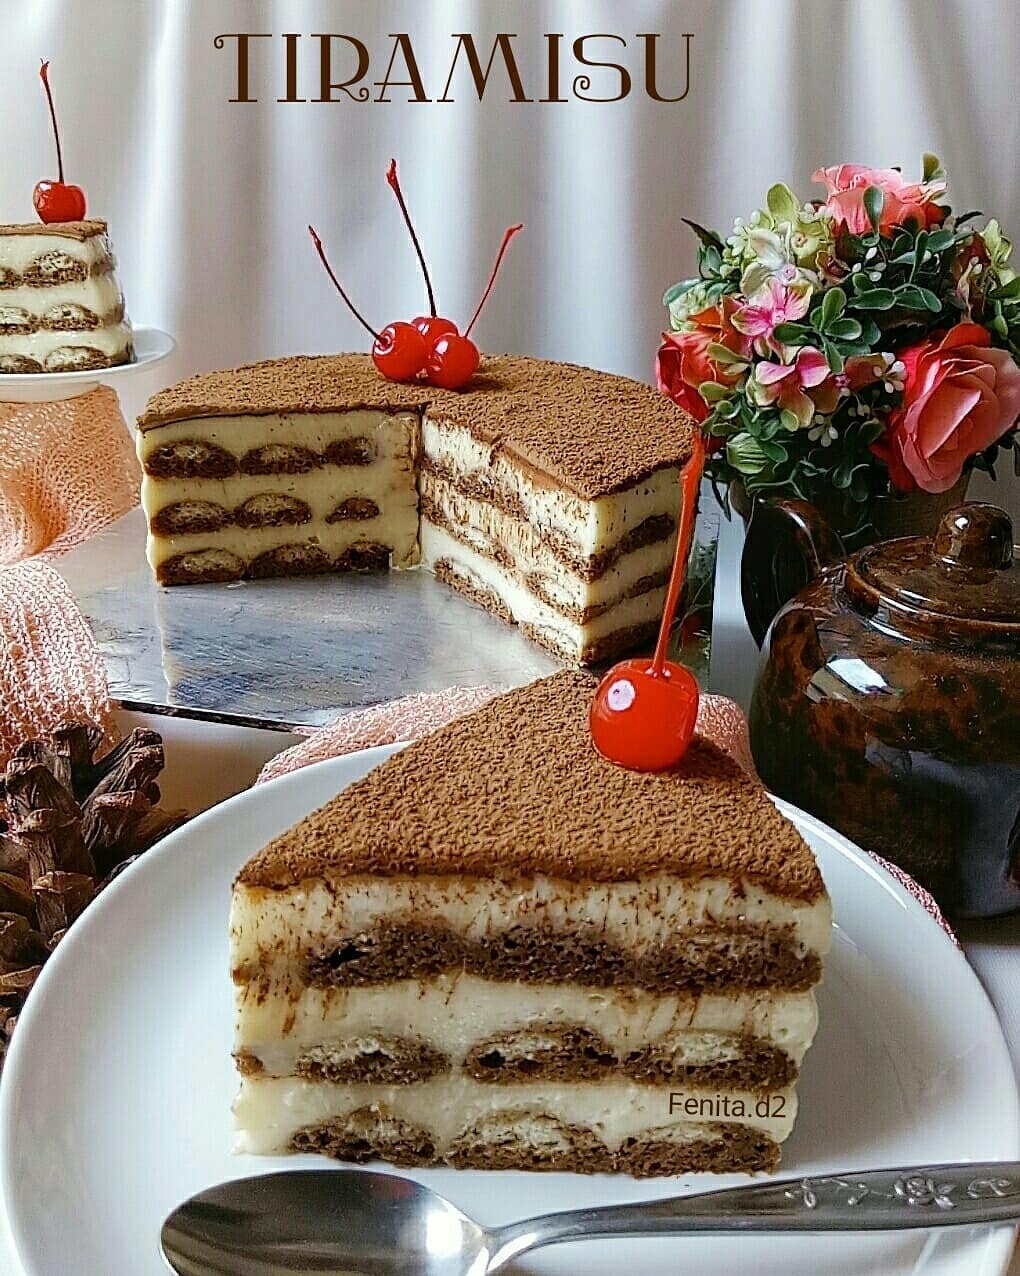 Resep Tiramisu Cake Homemade Yang Original Enak Dan Lembut Indozone